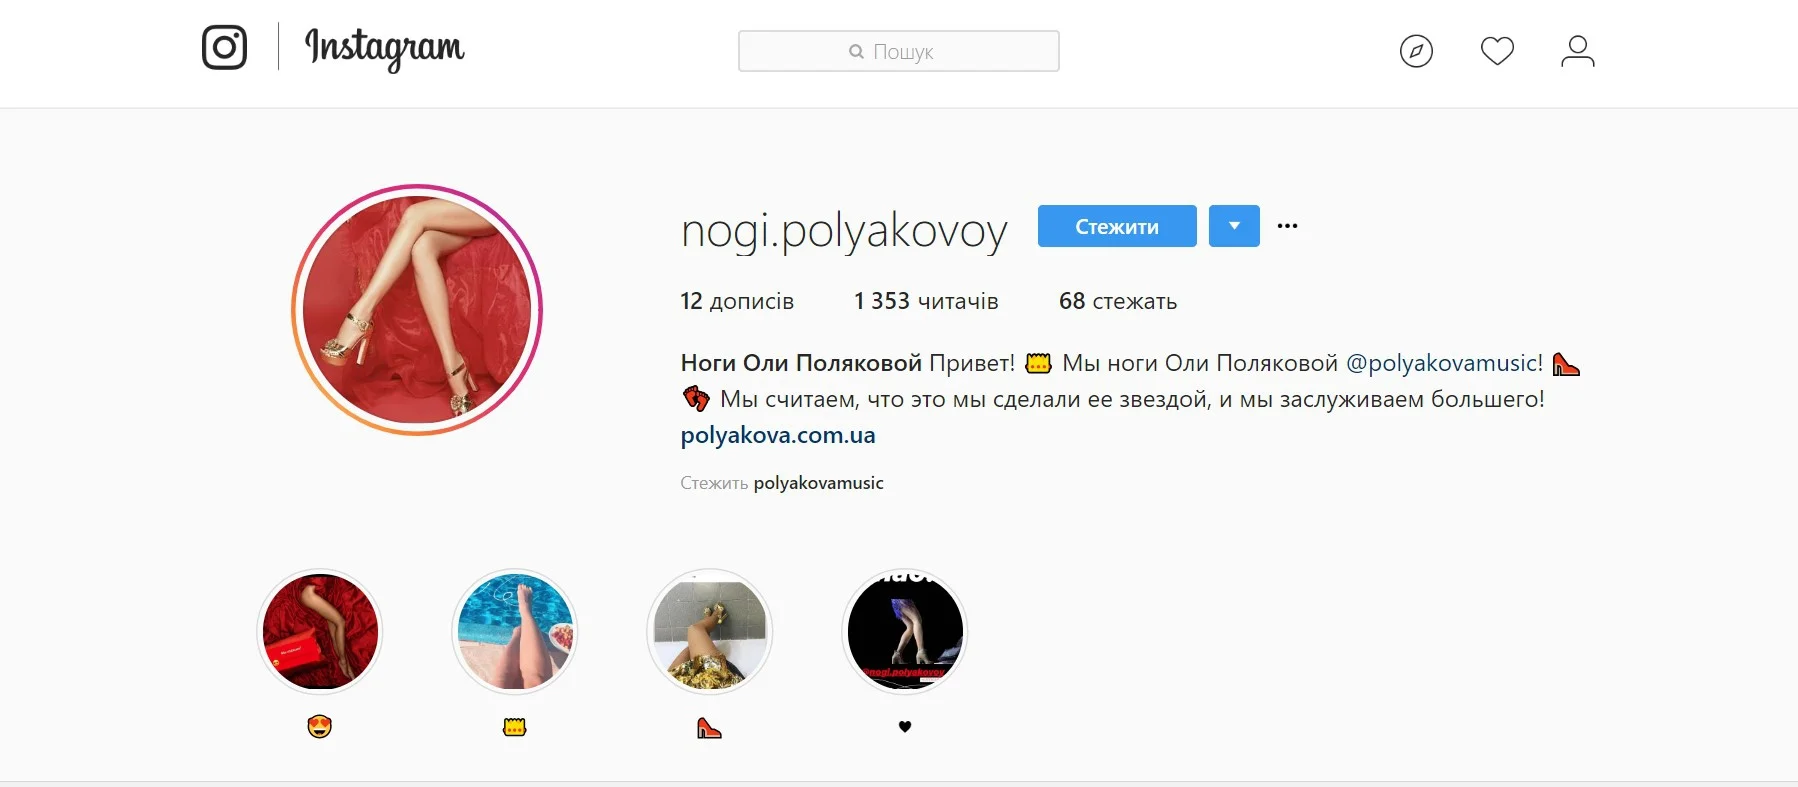 Сенсація дня: у ніг Олі Полякової з'явився особистий Instagram - фото 390860